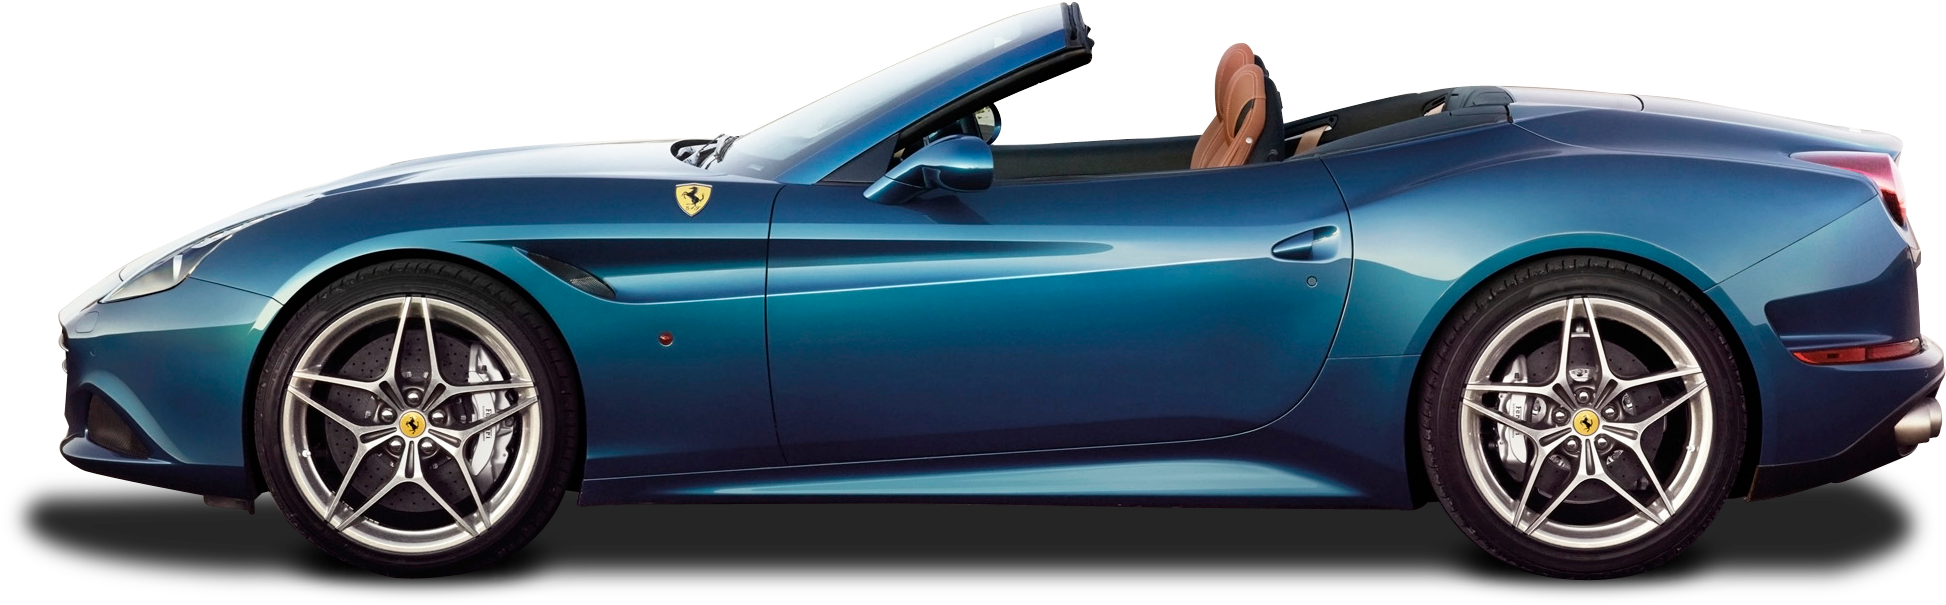 Ferrari Portofino PNG изображения фон